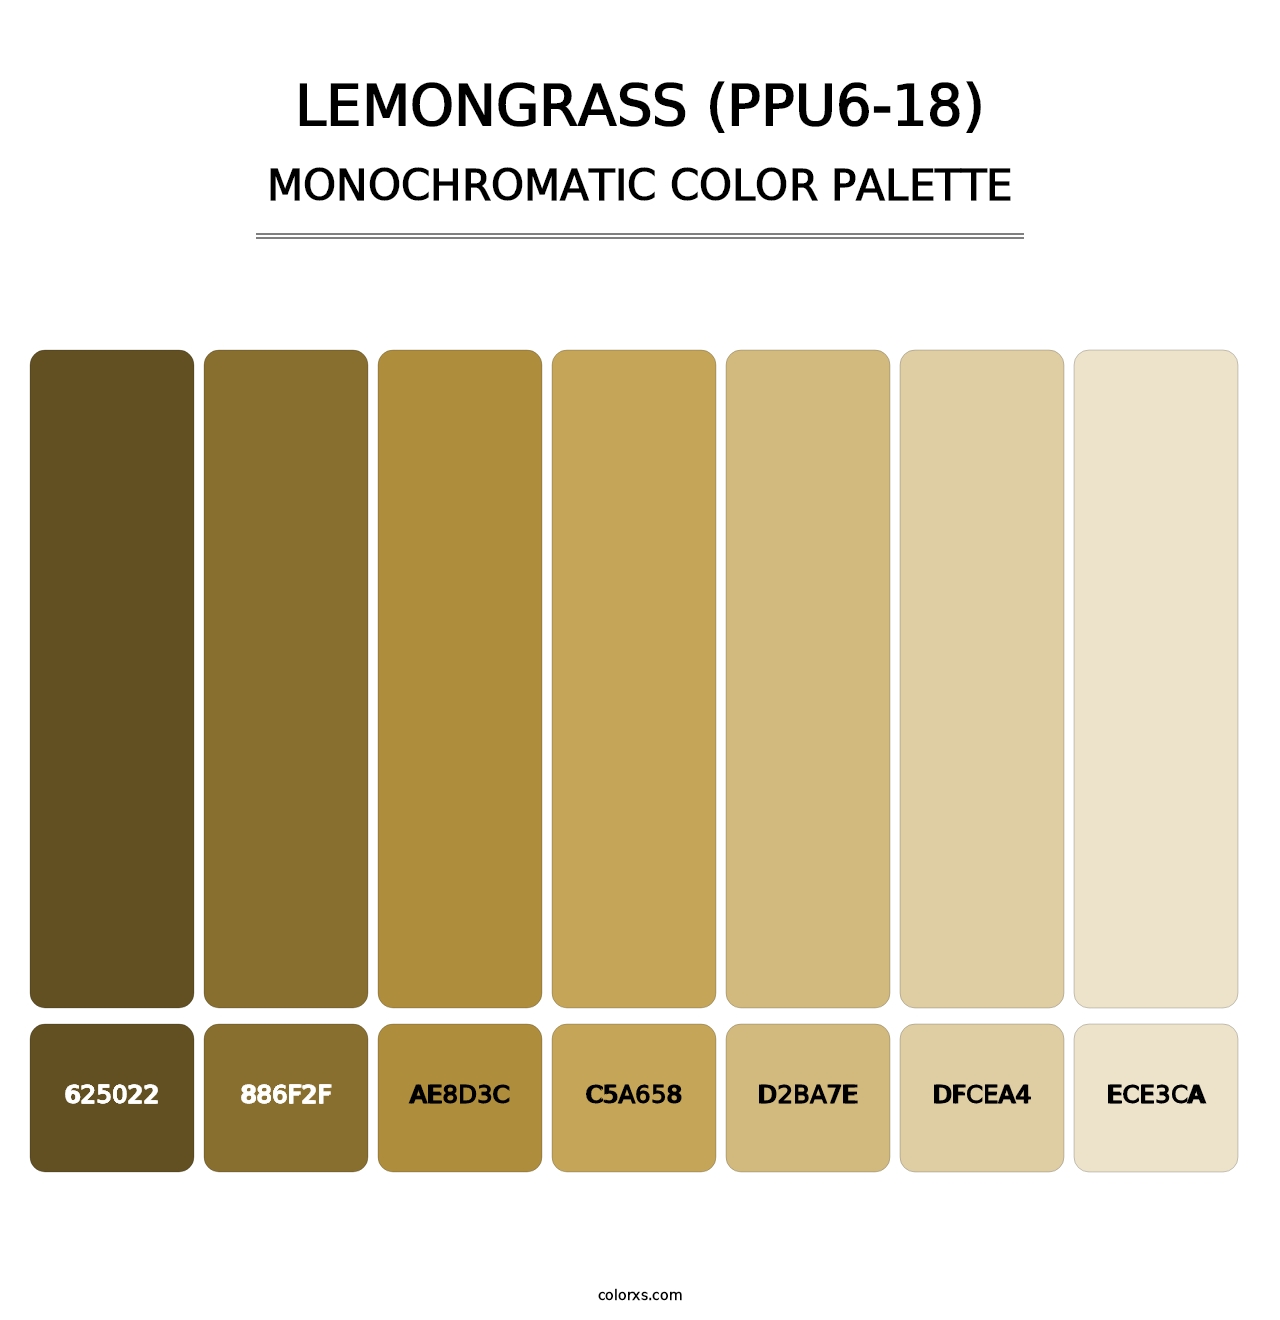 Lemongrass (PPU6-18) - Monochromatic Color Palette